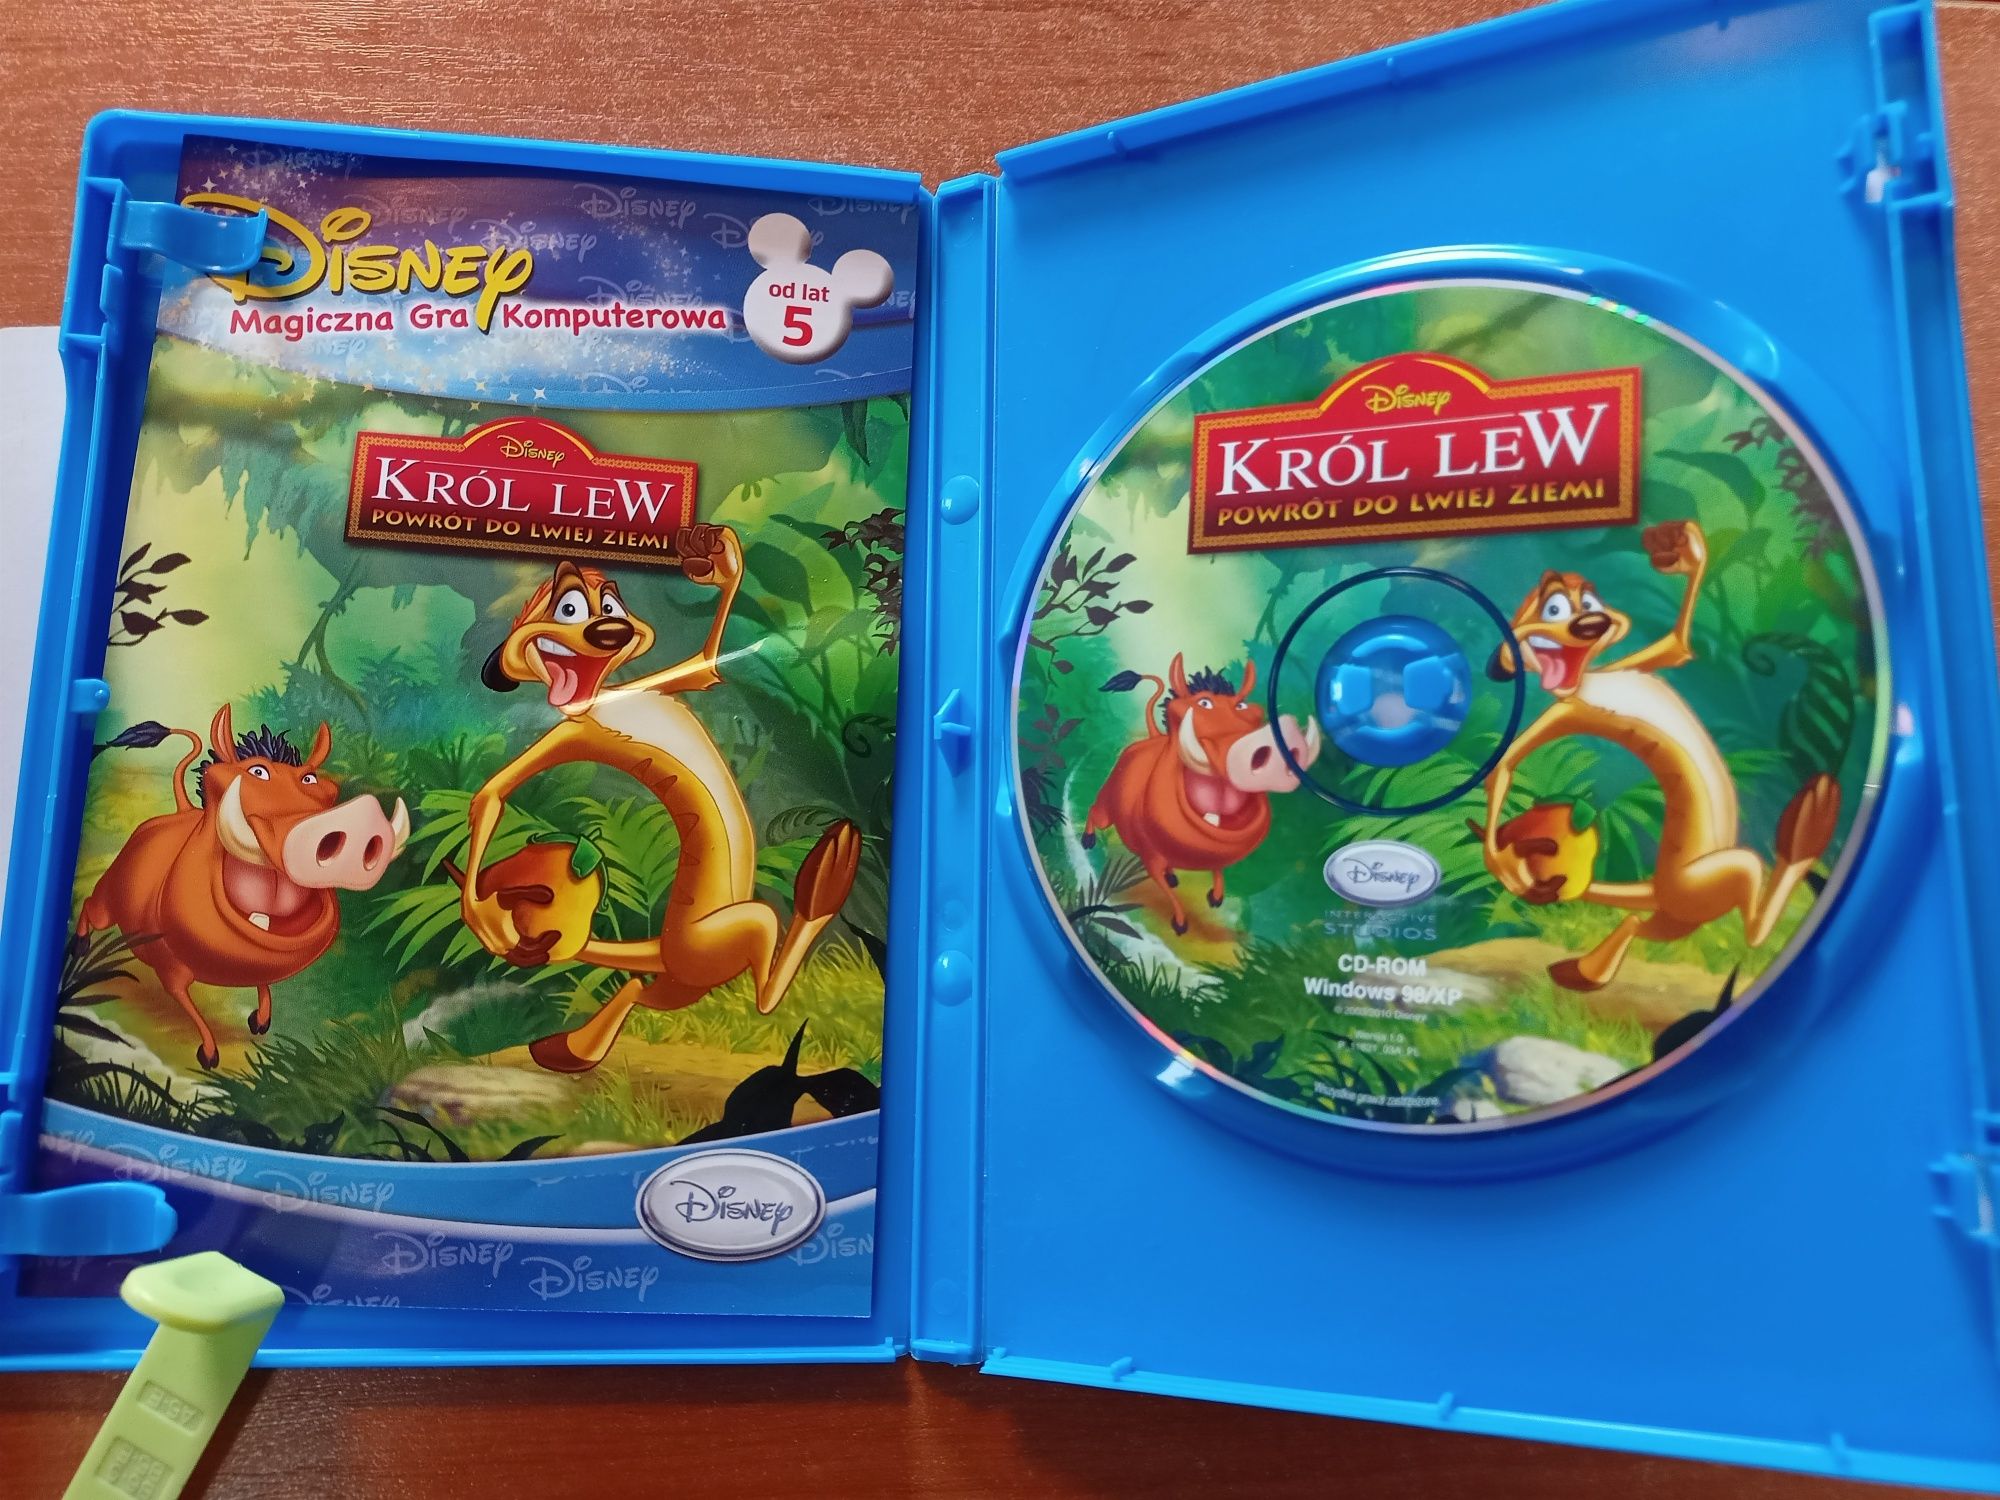 Król Lew Disney Powrót do lwiej ziemi GRA PC CD-ROM